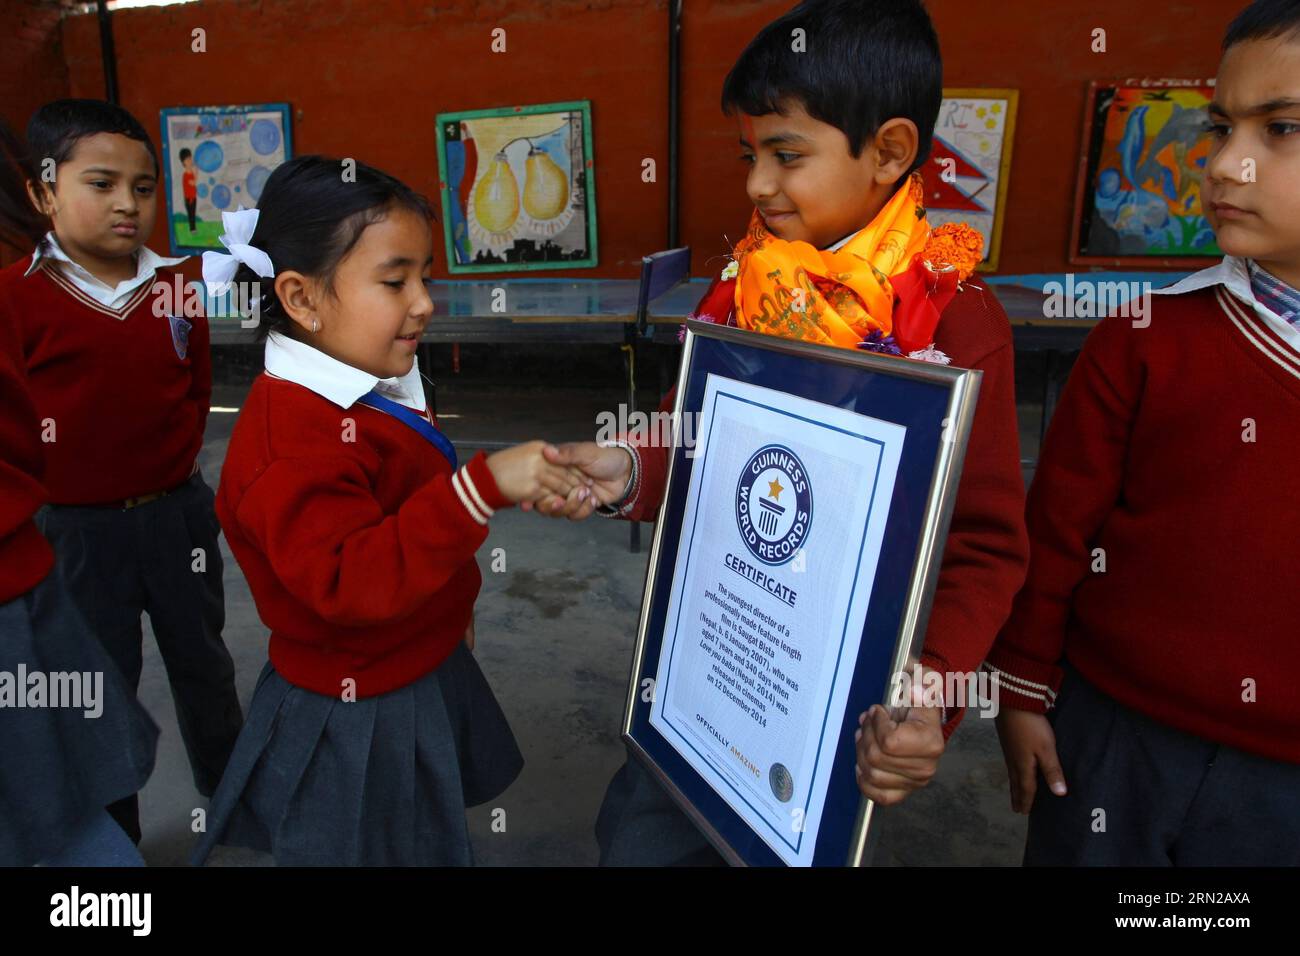 Il bambino nepalese di otto anni Saugat Bista (3rd L) si congratula con i suoi compagni di classe dopo aver infranto il Guinness dei primati per il più giovane direttore del mondo a Kathmandu, Nepal, 22 febbraio 2015. Bista aveva infranto il record del ragazzo indiano Kishan Shrikanth che ha diretto un film all'età di 9 anni dirigendo un film Love You Baba all'età di 7 anni e 340 giorni. (Xinhua /) NEPAL-KATHMANDU-GUINNESS RECORD DEL MONDO - IL PIÙ GIOVANE REGISTA CINEMATOGRAFICO SunilxSharma PUBLICATIONxNOTxINxCHN Nepalese otto anni Kid Bista 3rd l È congratulato dai suoi compagni di classe dopo aver battuto il Guinness World Records for World Foto Stock